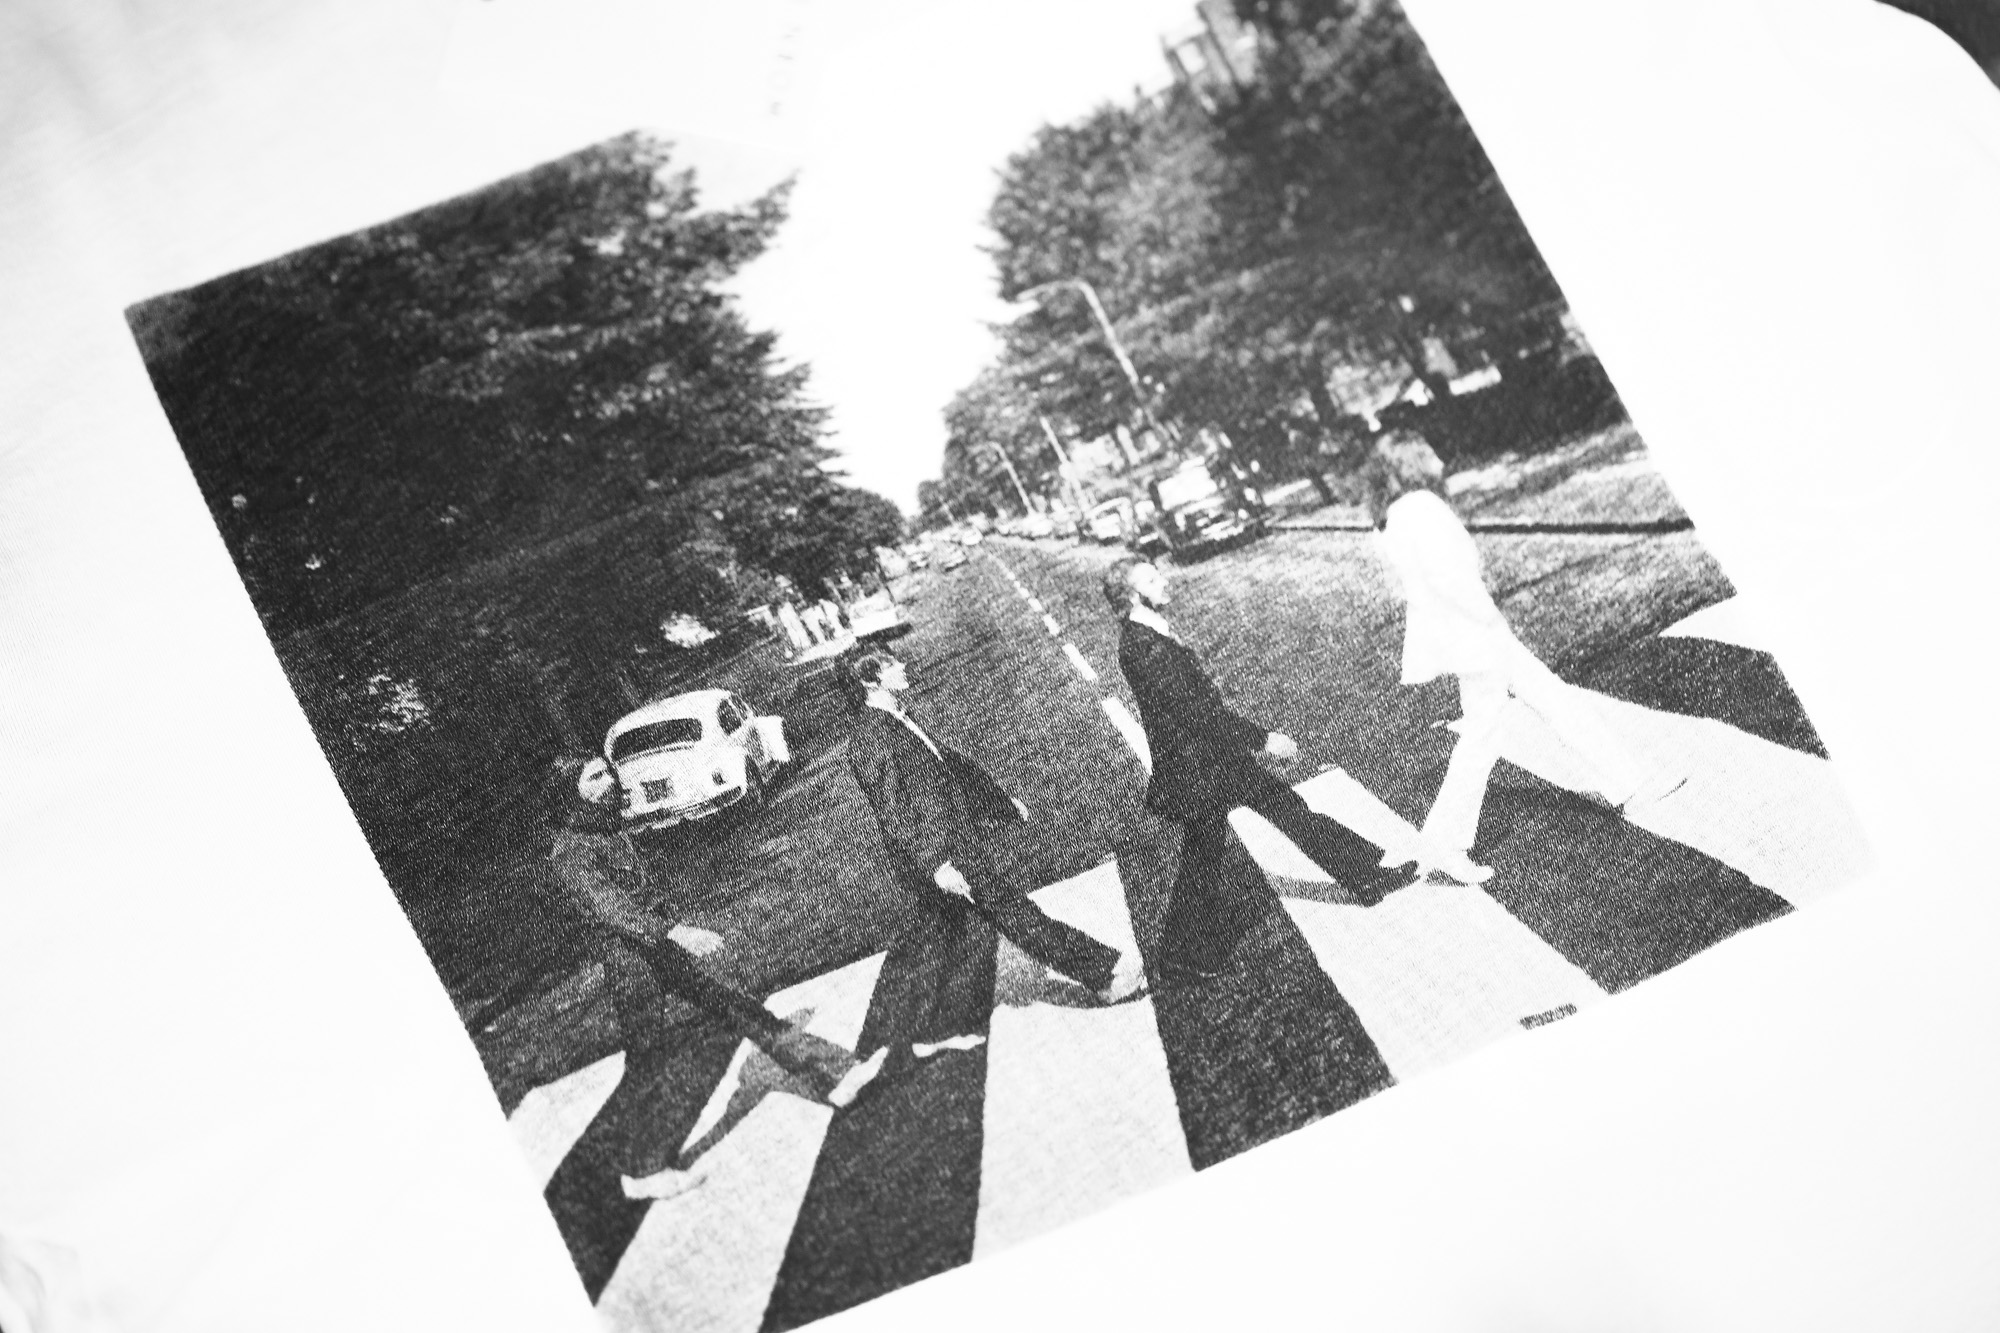 Worn By (ウォーンバイ) Abbey Road The Beatles ザ・ビートルズ アビイ・ロード 復刻オフィシャルライセンスTシャツ ロックTシャツ バンドTシャツ WHITE (ホワイト) 2017 春夏新作 愛知 名古屋 Alto e Diritto アルト エ デリット wornby thebeatles ビートルズ bandtee